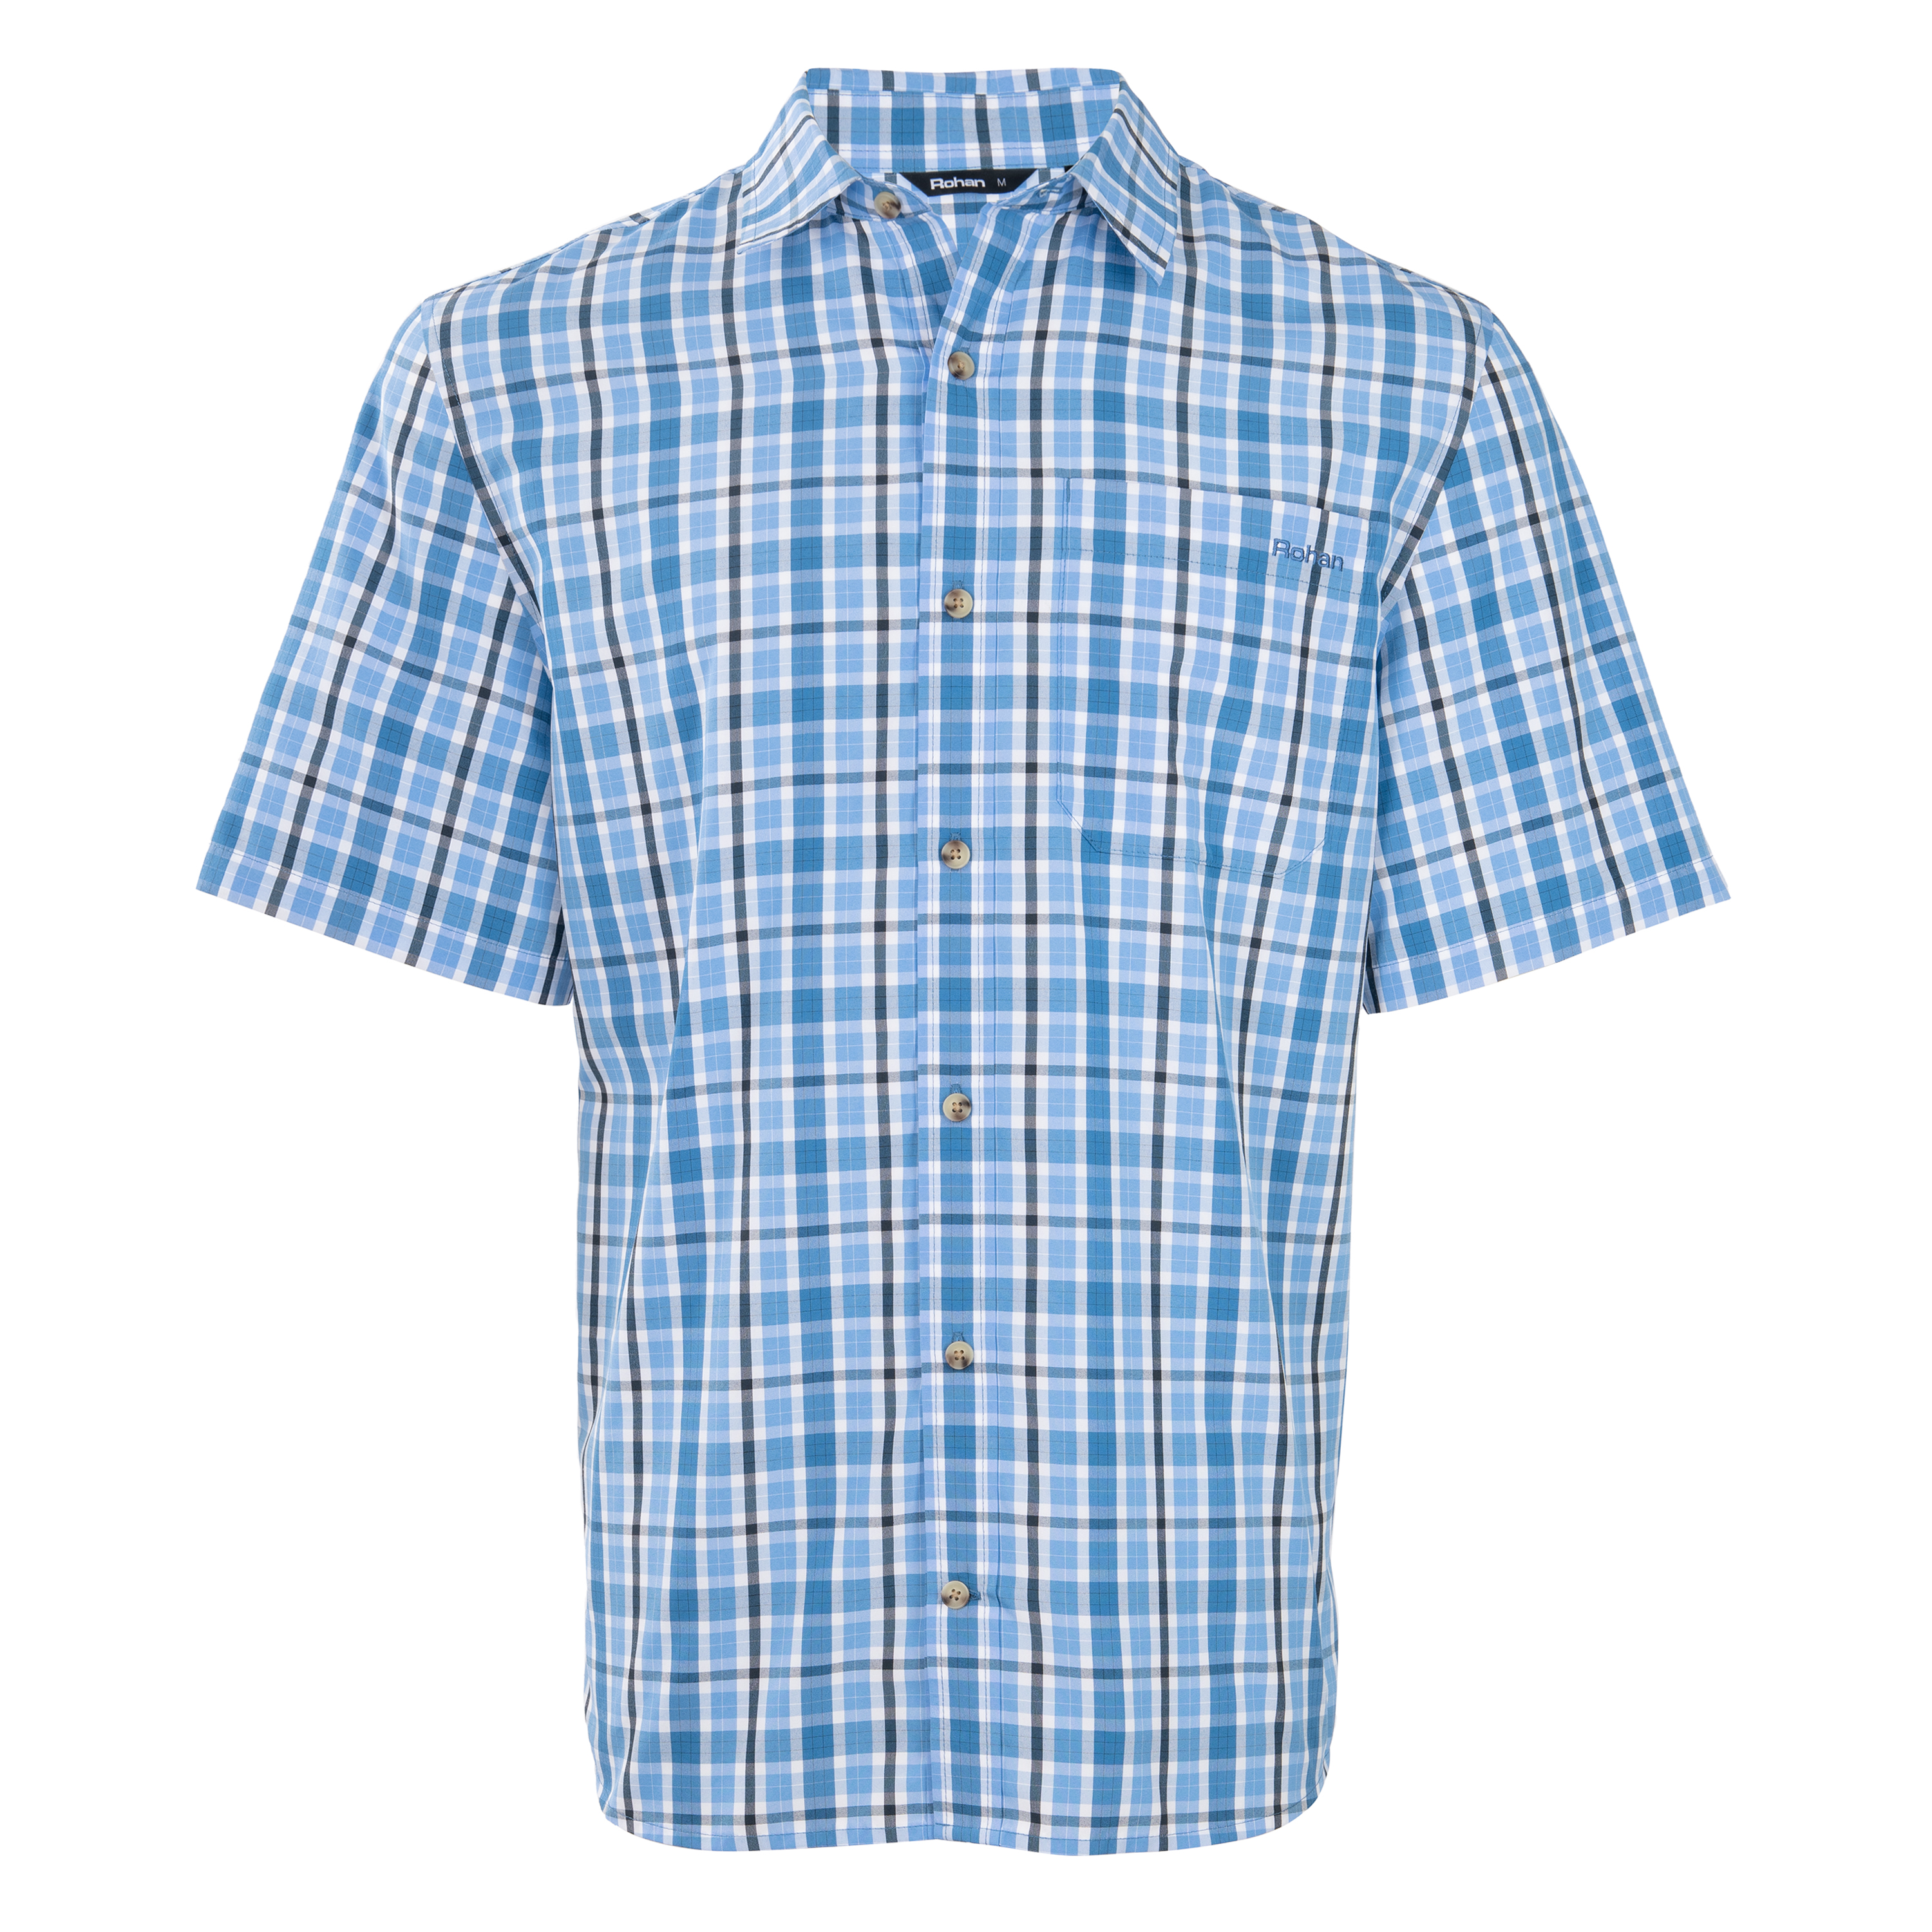 Men’s Coast Short Sleeve Checked Shirt